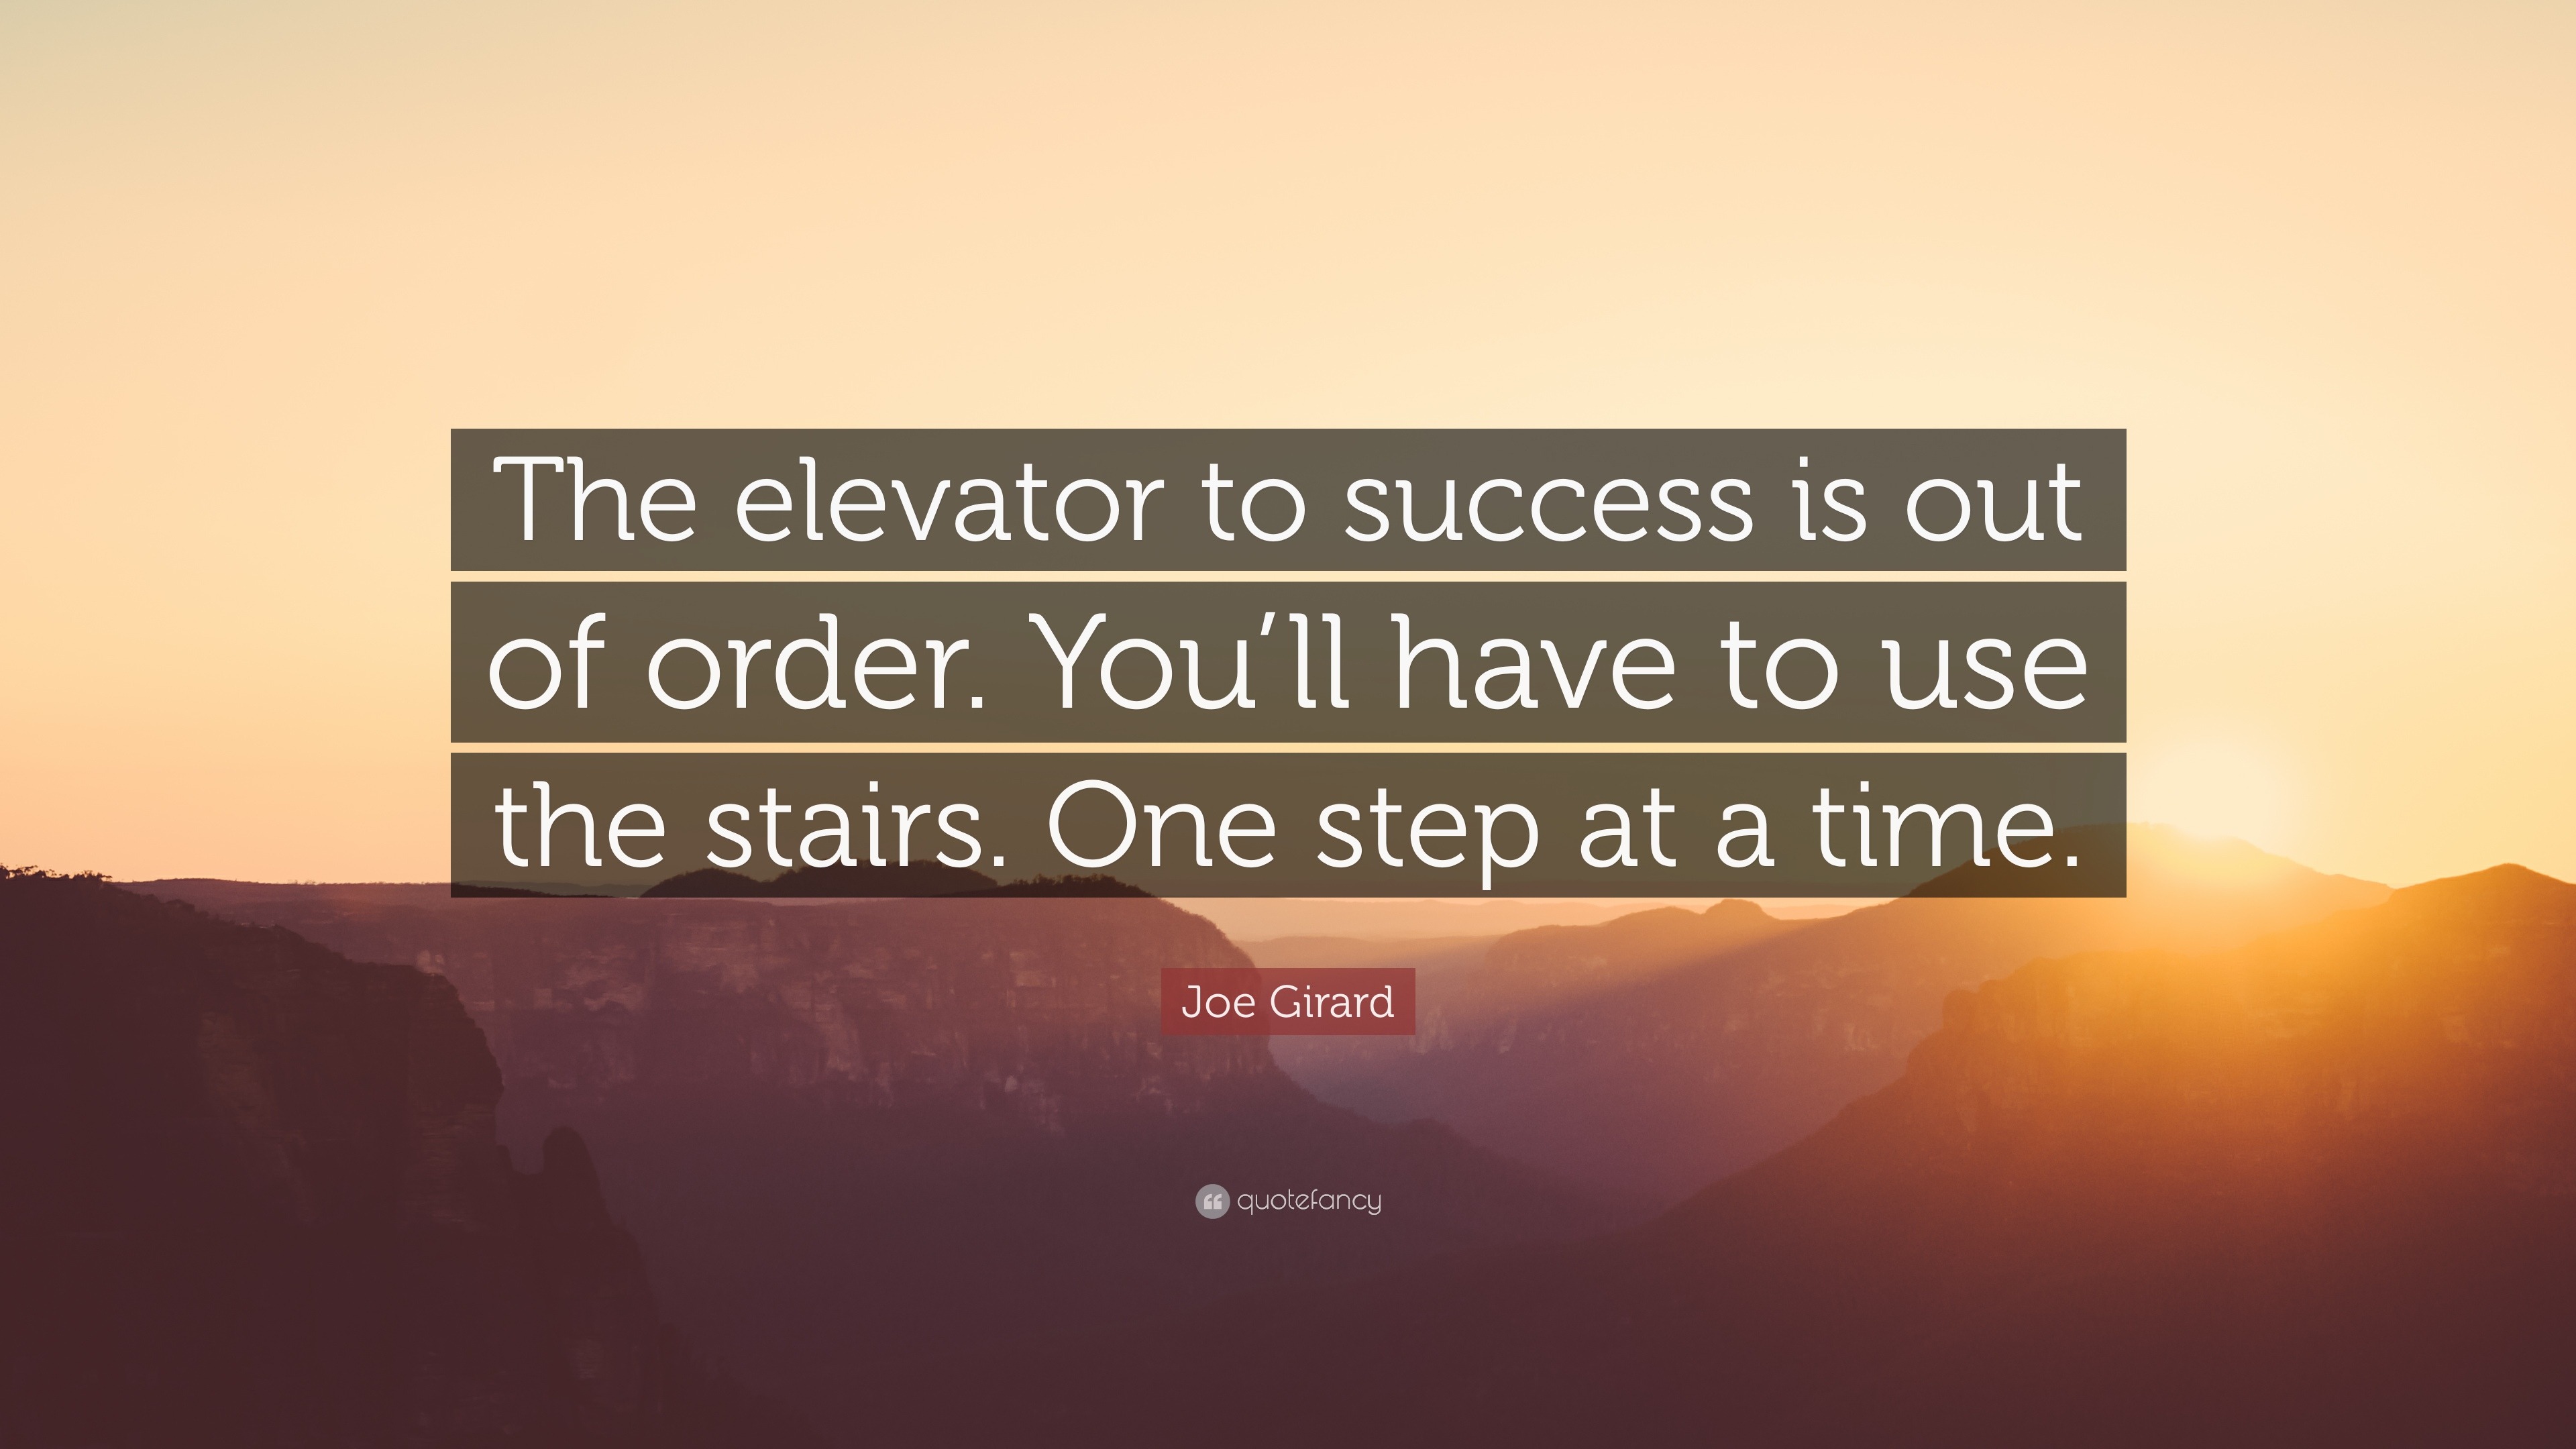 Aprenda inglês com citações #20: The elevator to success is